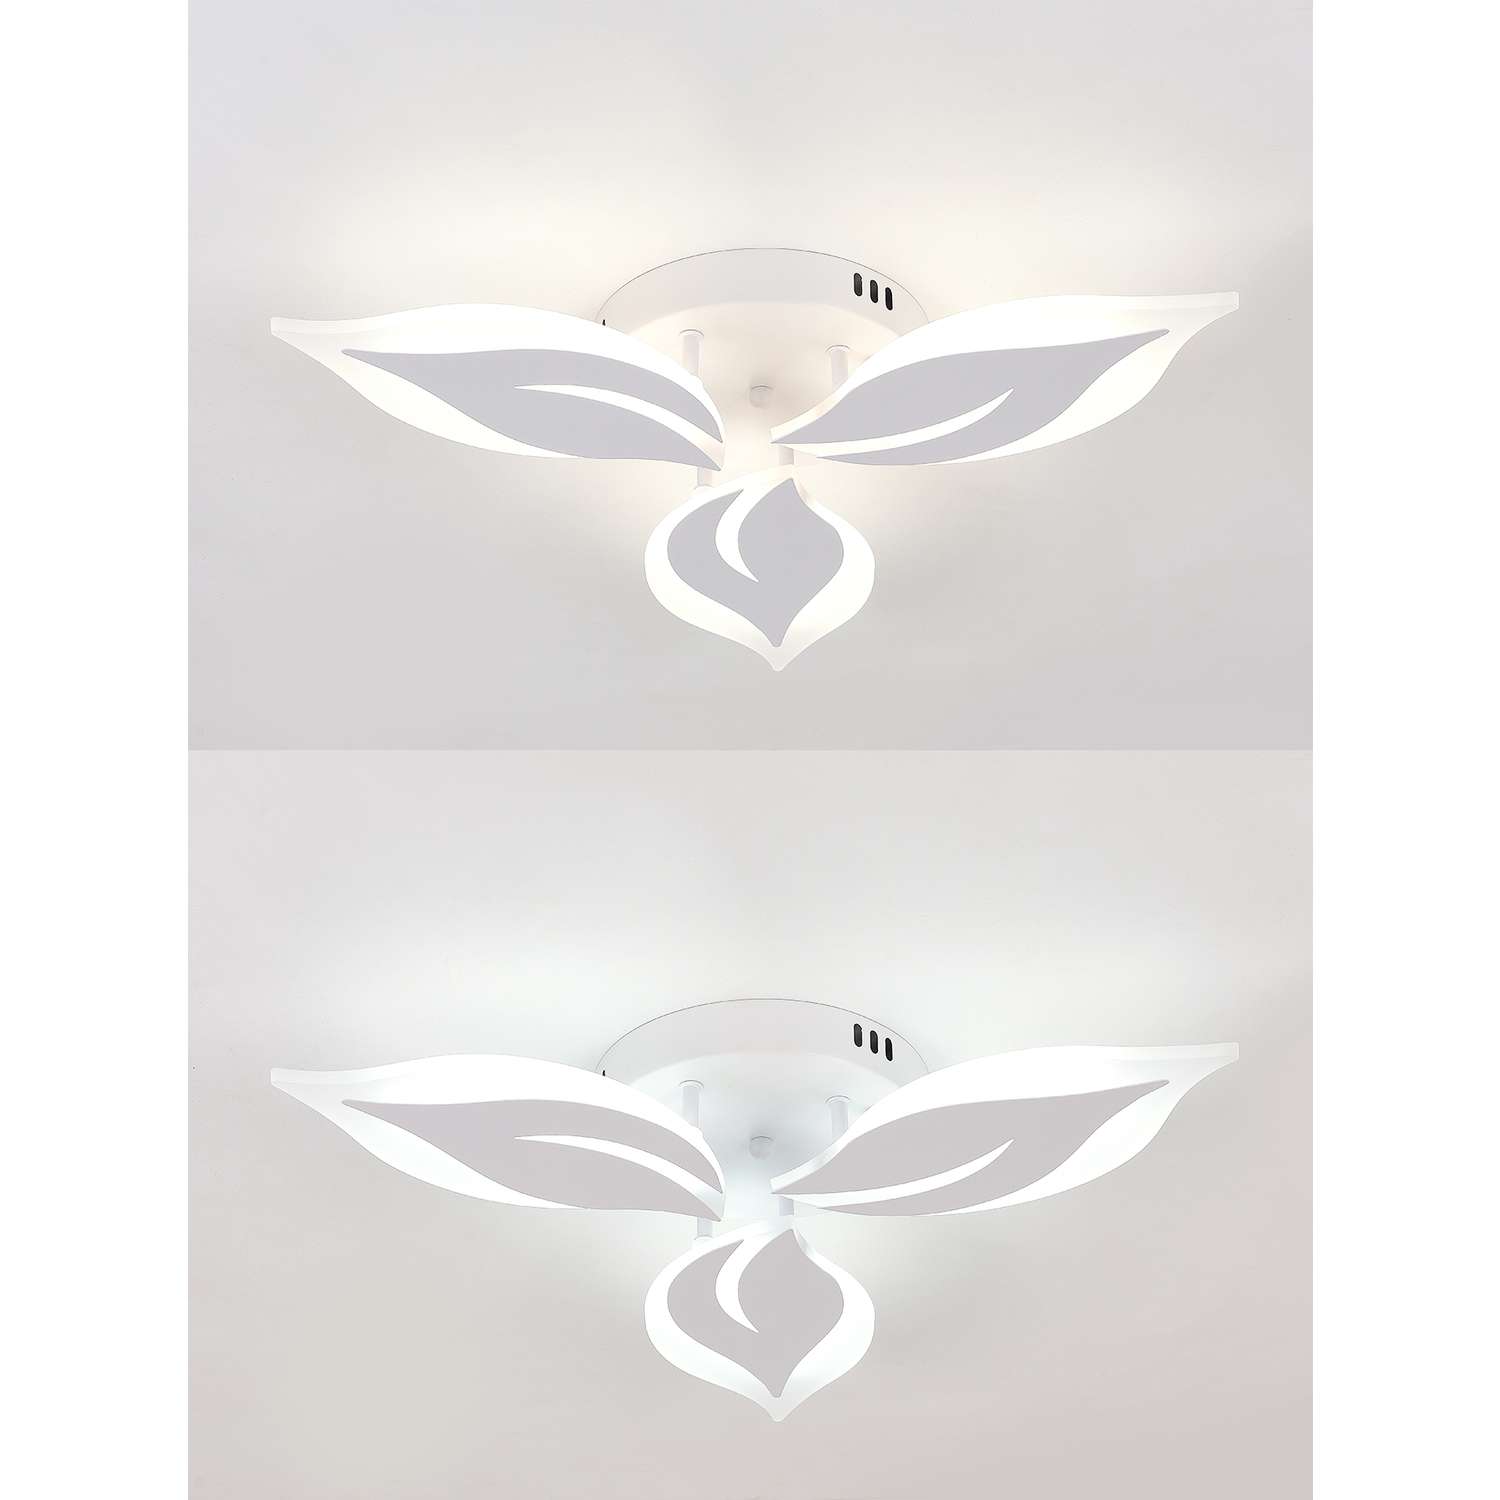 Светодиодный светильник NATALI KOVALTSEVA люстра 48W белый LED - фото 2